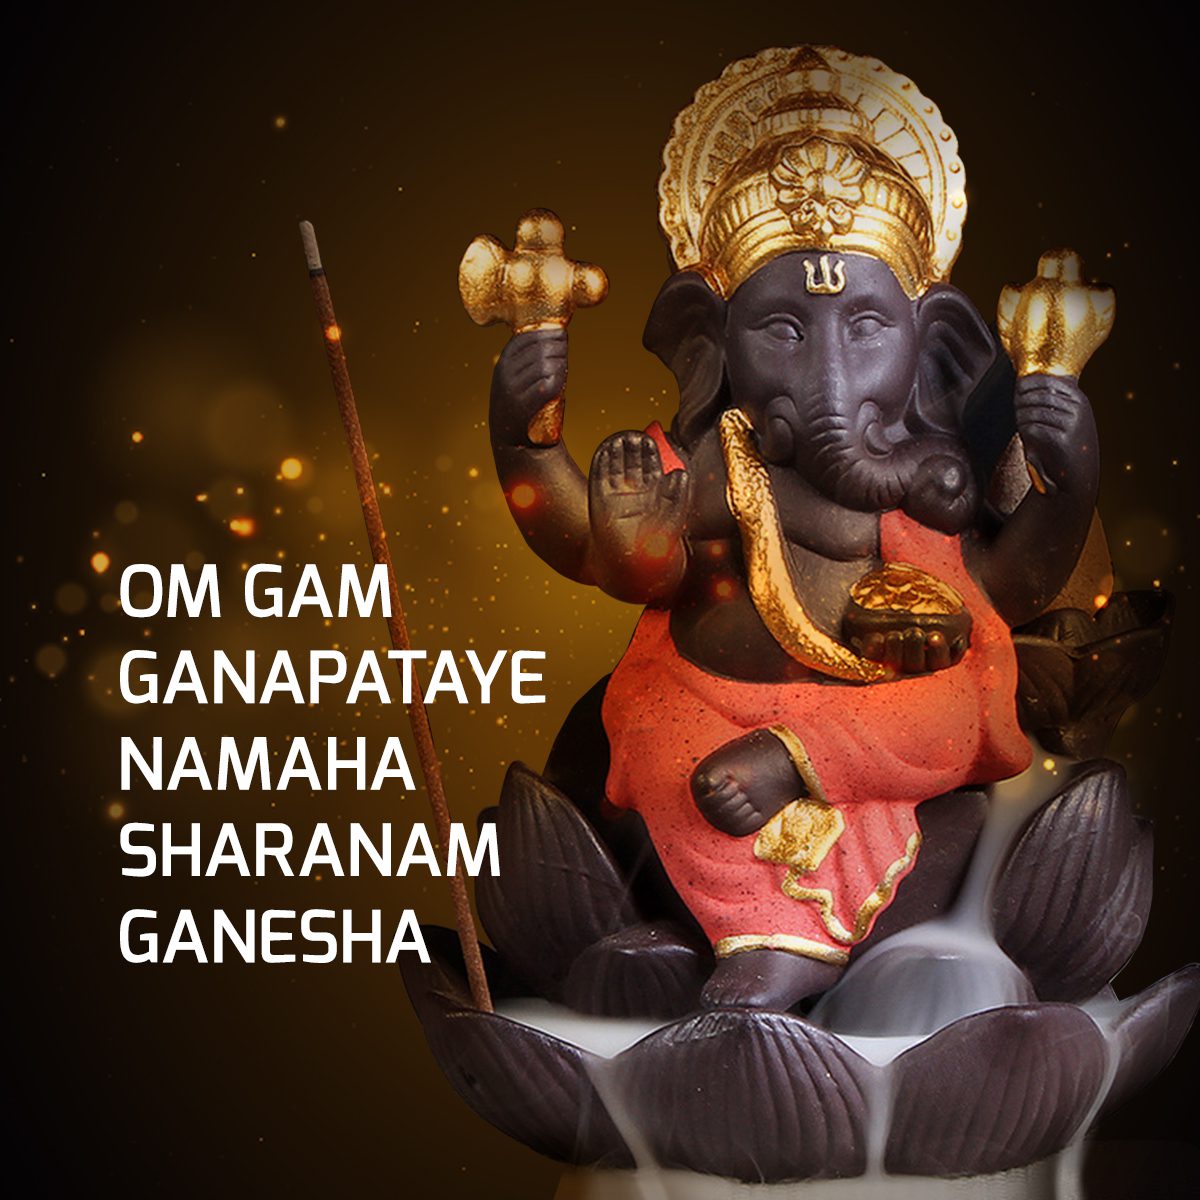 Mantra, Lord Ganesha, proporcionador do sucesso e da fartura, mestre do intelecto, da sabedoria e chefe do exército celestial, Divindade, Hindu, Hinduísmo, símbolo das soluções lógicas, prosperidade, sucesso, Aum, Mantra Om Gam Ganapataye Namaha